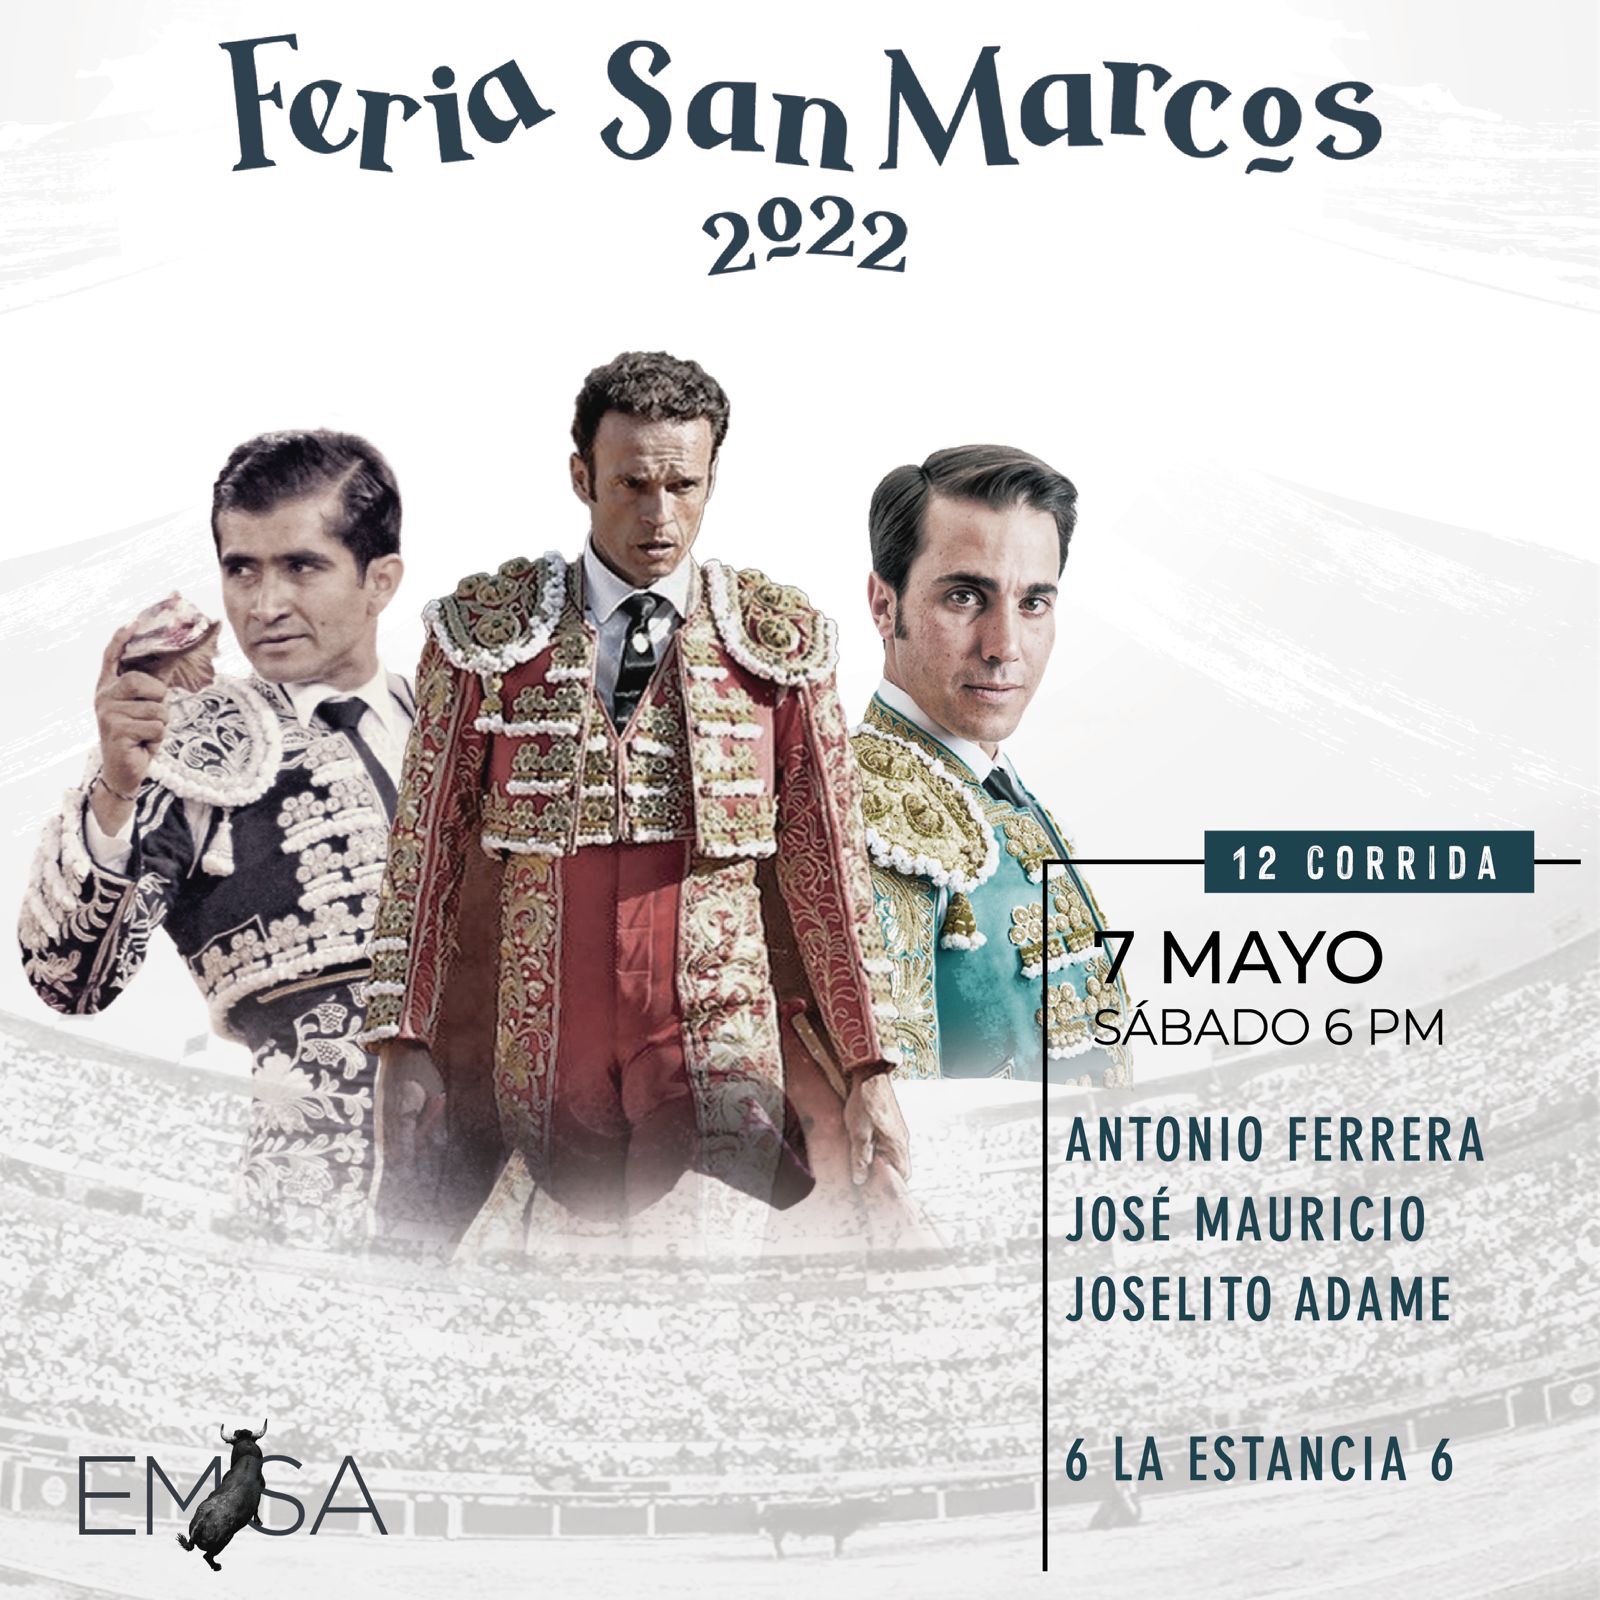 Antonio Ferrera sustituirá a Emilio de Justo el 7 de mayo en la Feria de San Marcos 2022.